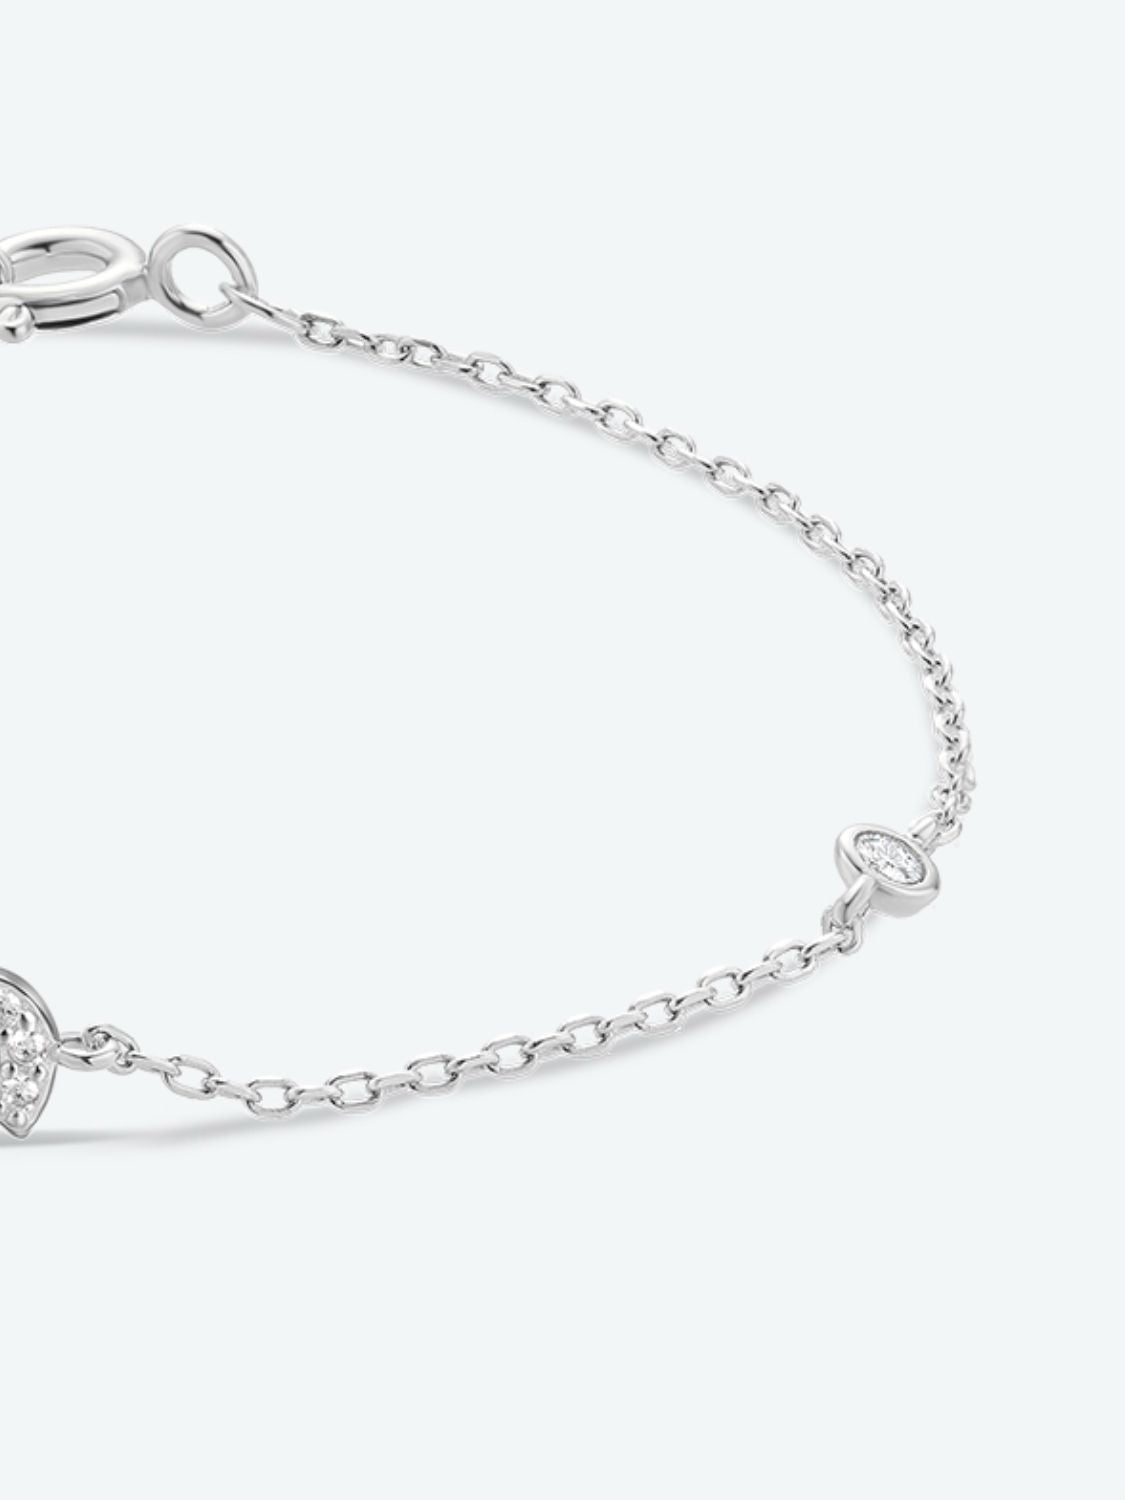 Q To U Zircon 925 Sterling Silver Bracelet - Women’s Jewelry - Bracelets - 19 - 2024